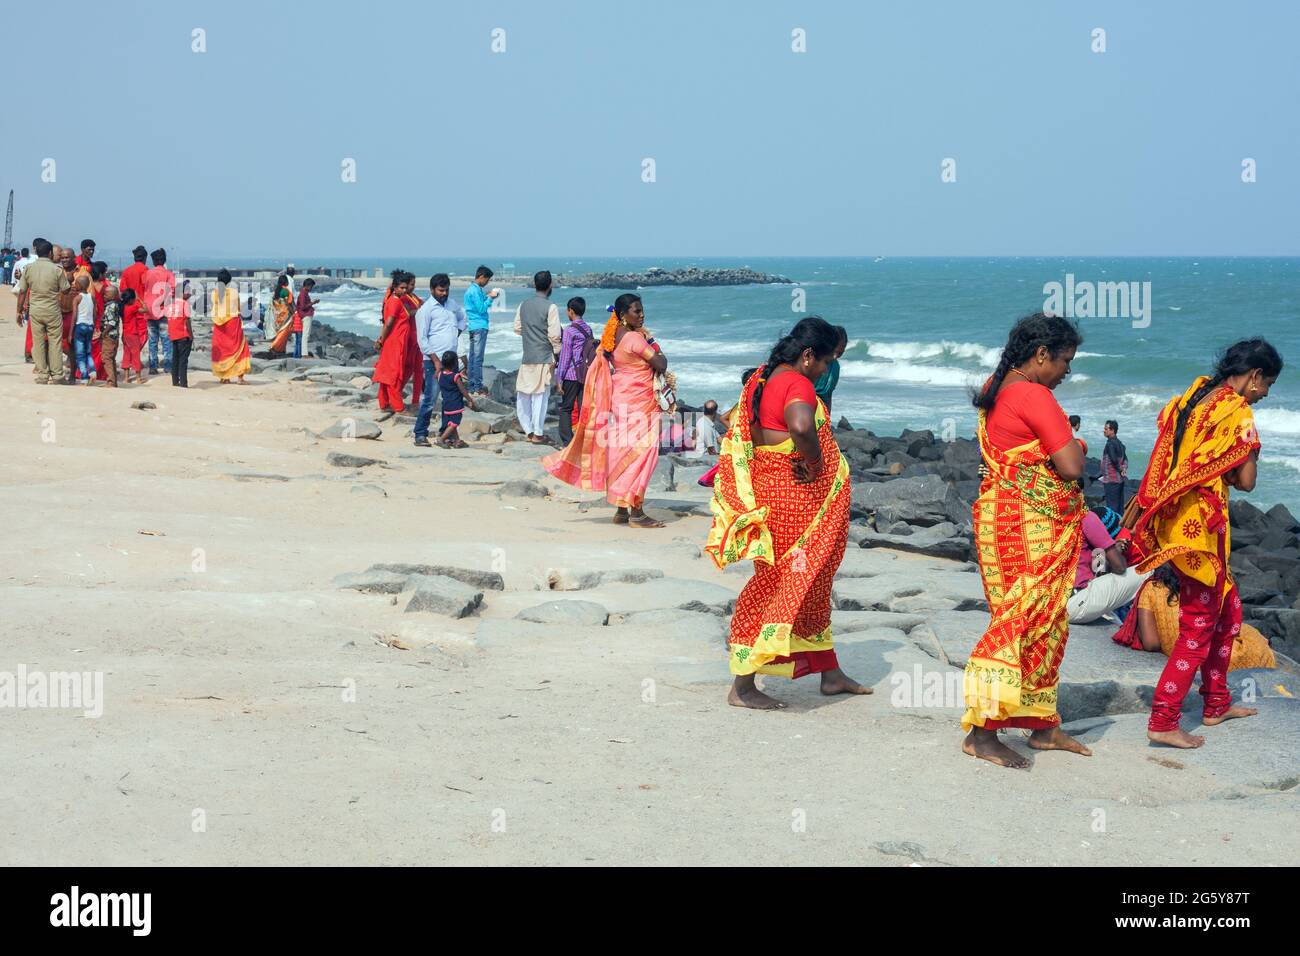 Des femelles indiennes portant des saris colorés rouges et jaunes en profitant du temps au bord de la mer, Puducherry (Pondichéry), Tamil Nadu, Inde Banque D'Images